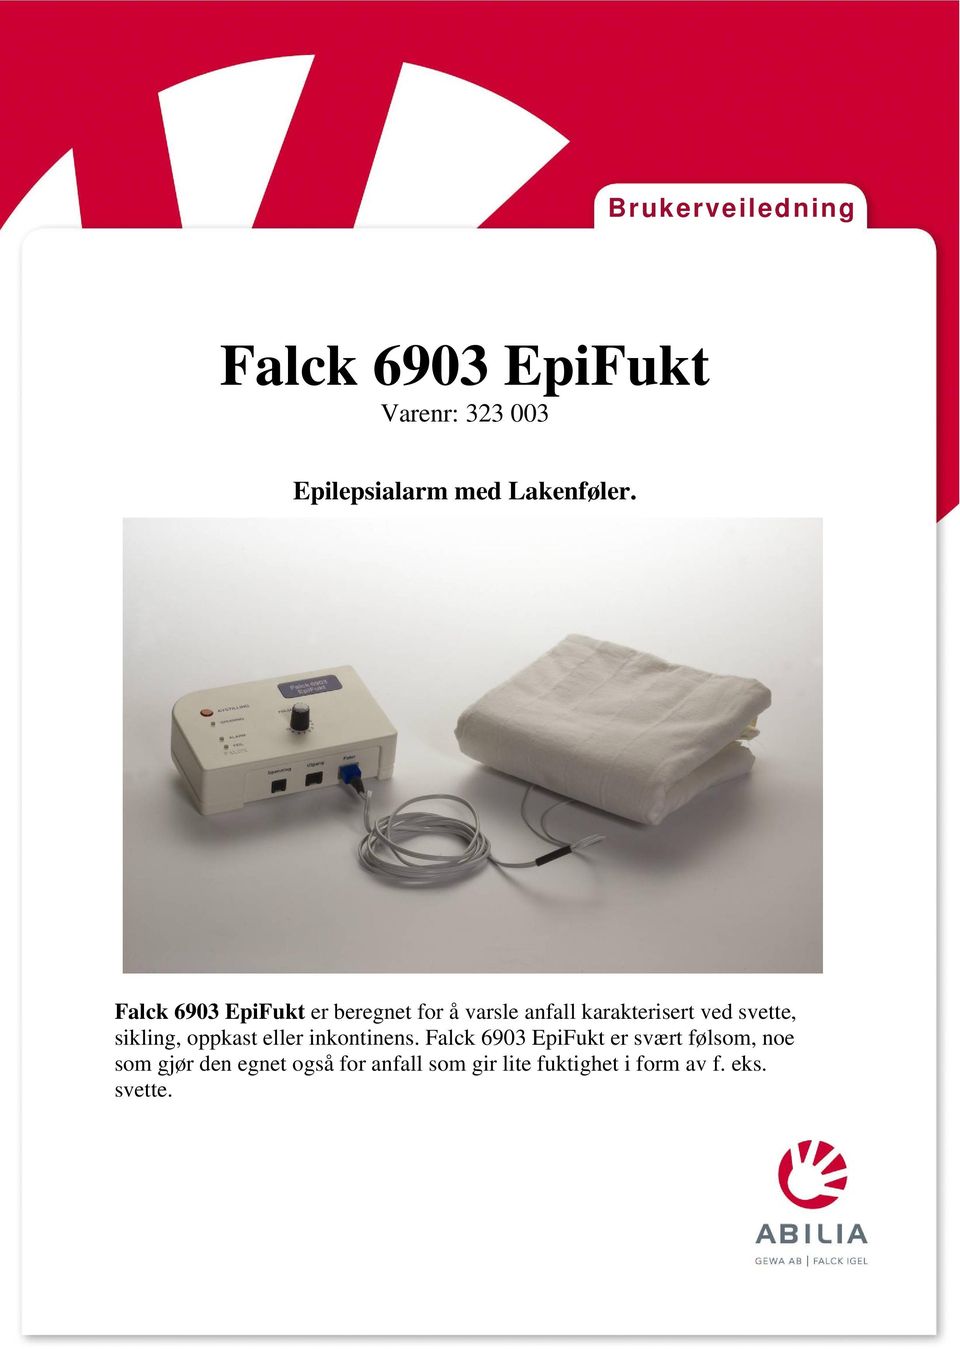 Falck 6903 EpiFukt er beregnet for å varsle anfall karakterisert ved svette,